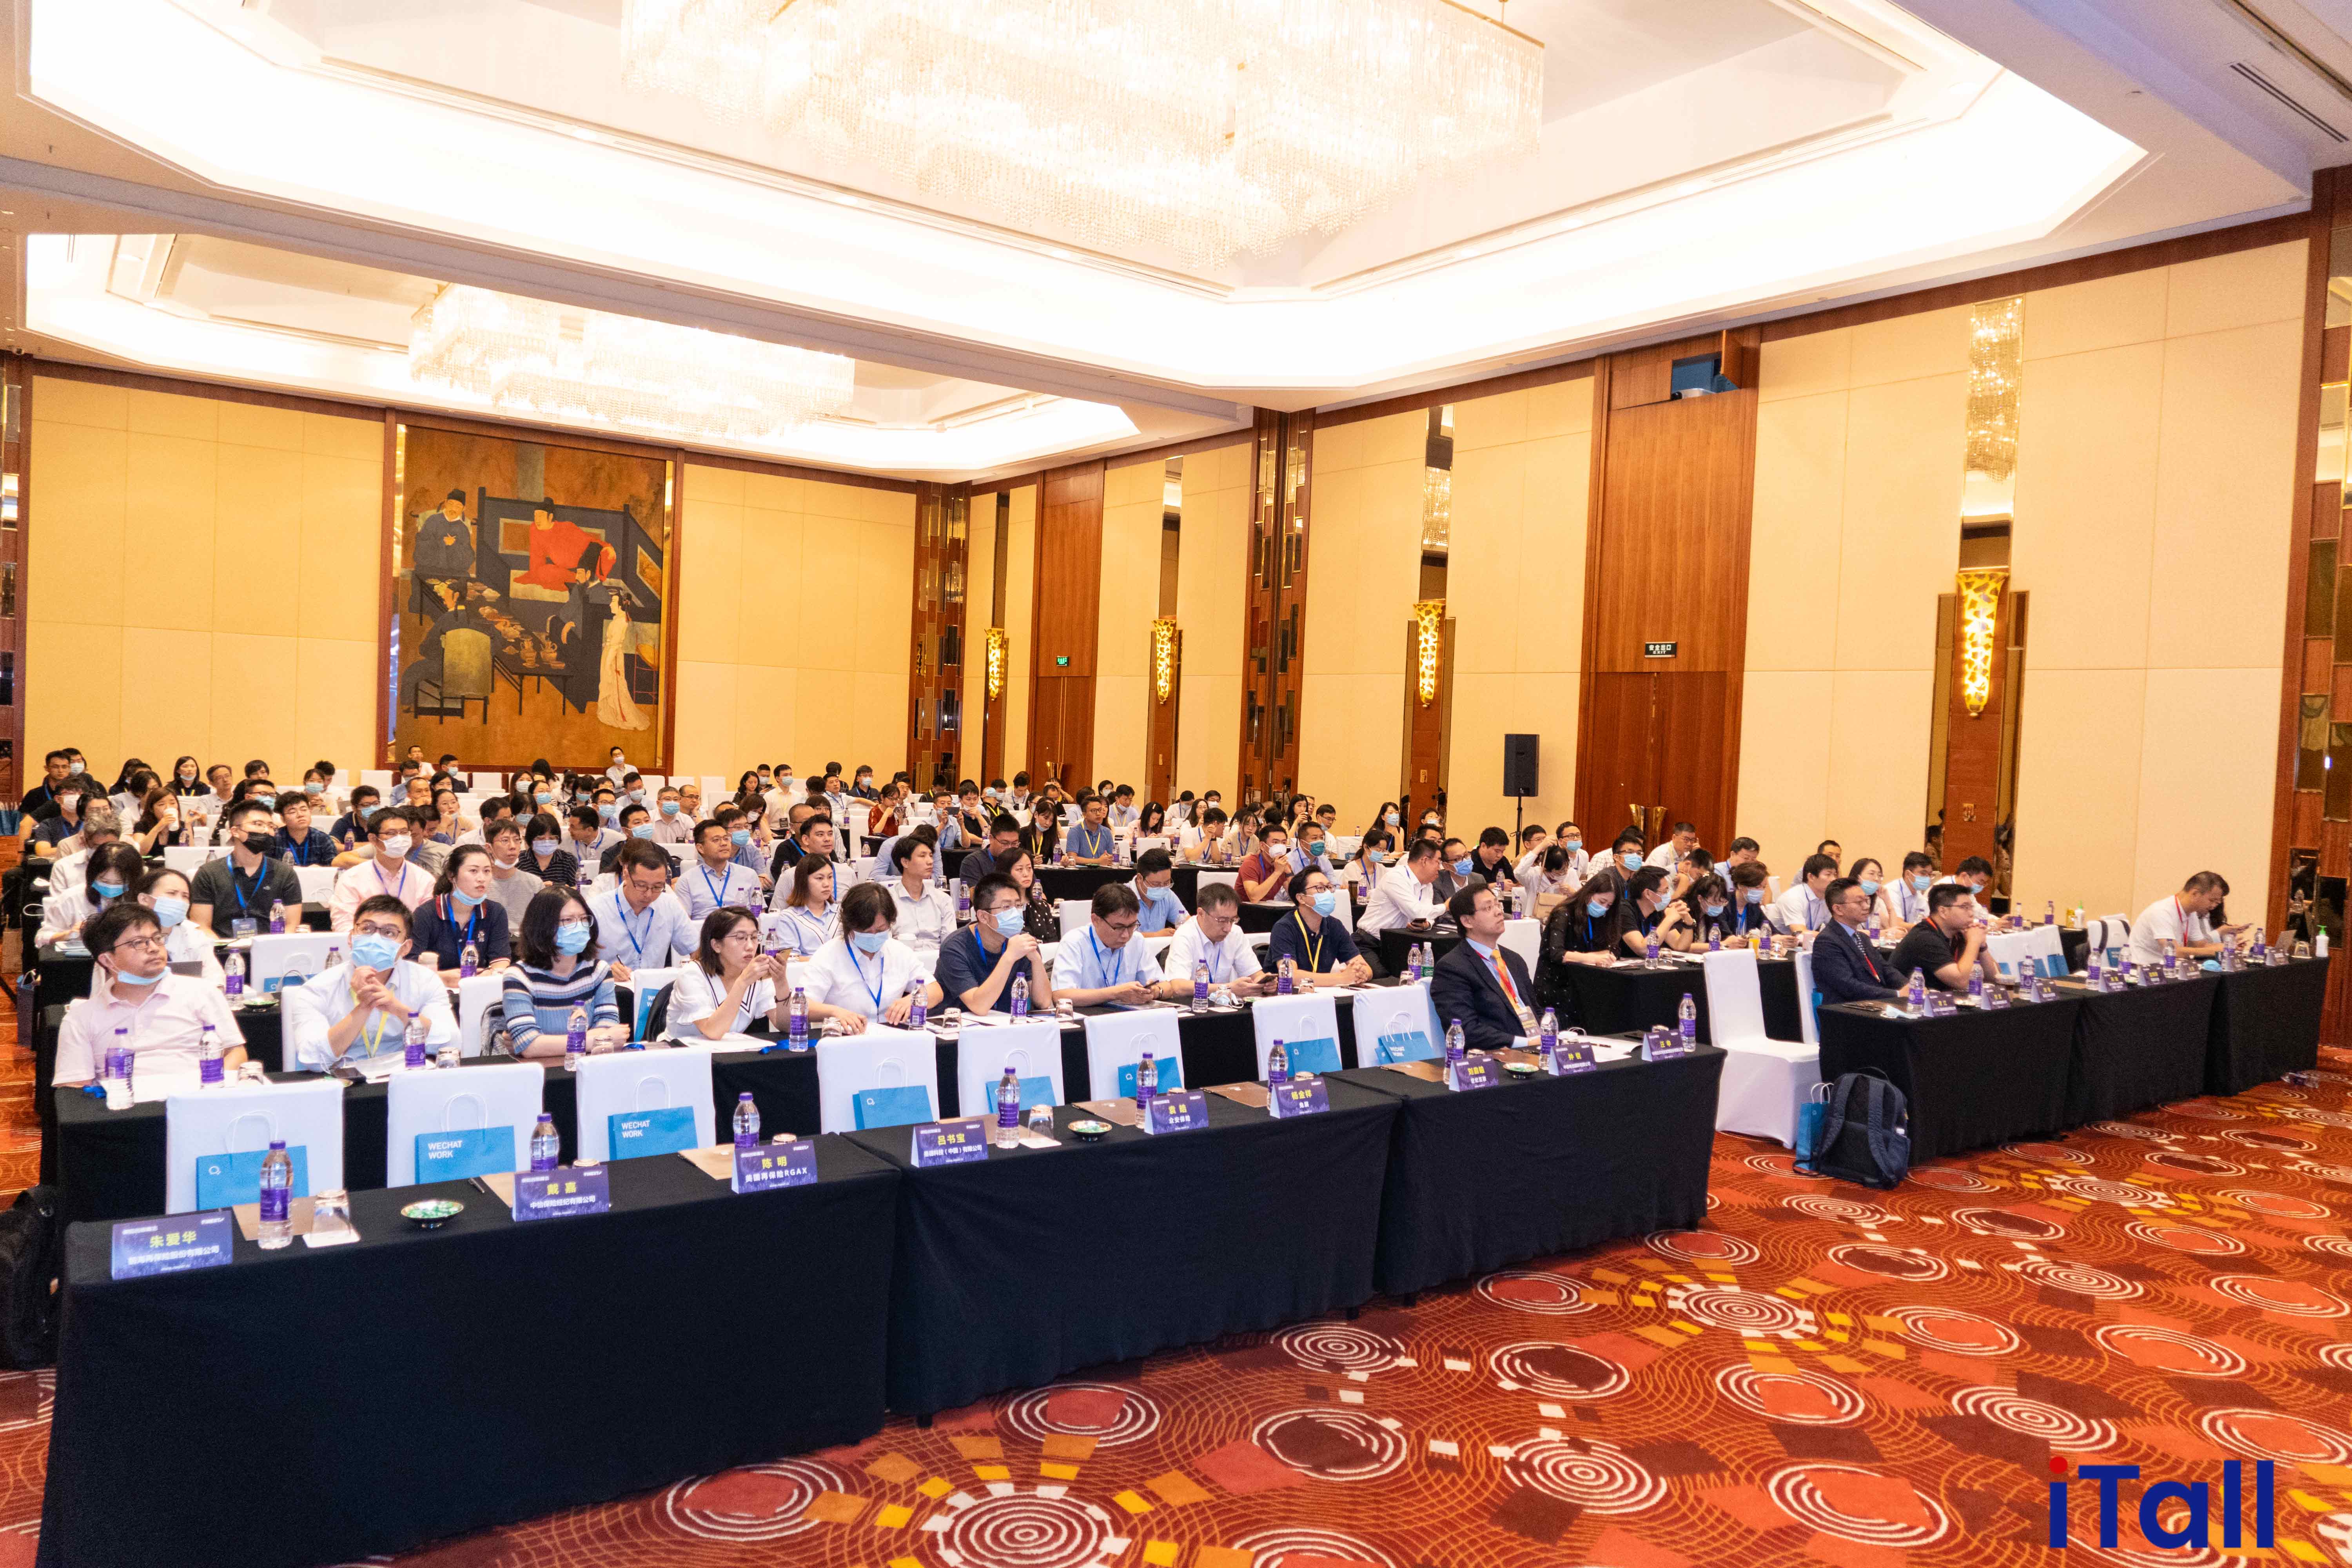 第十七届上海iTall金融科创峰会